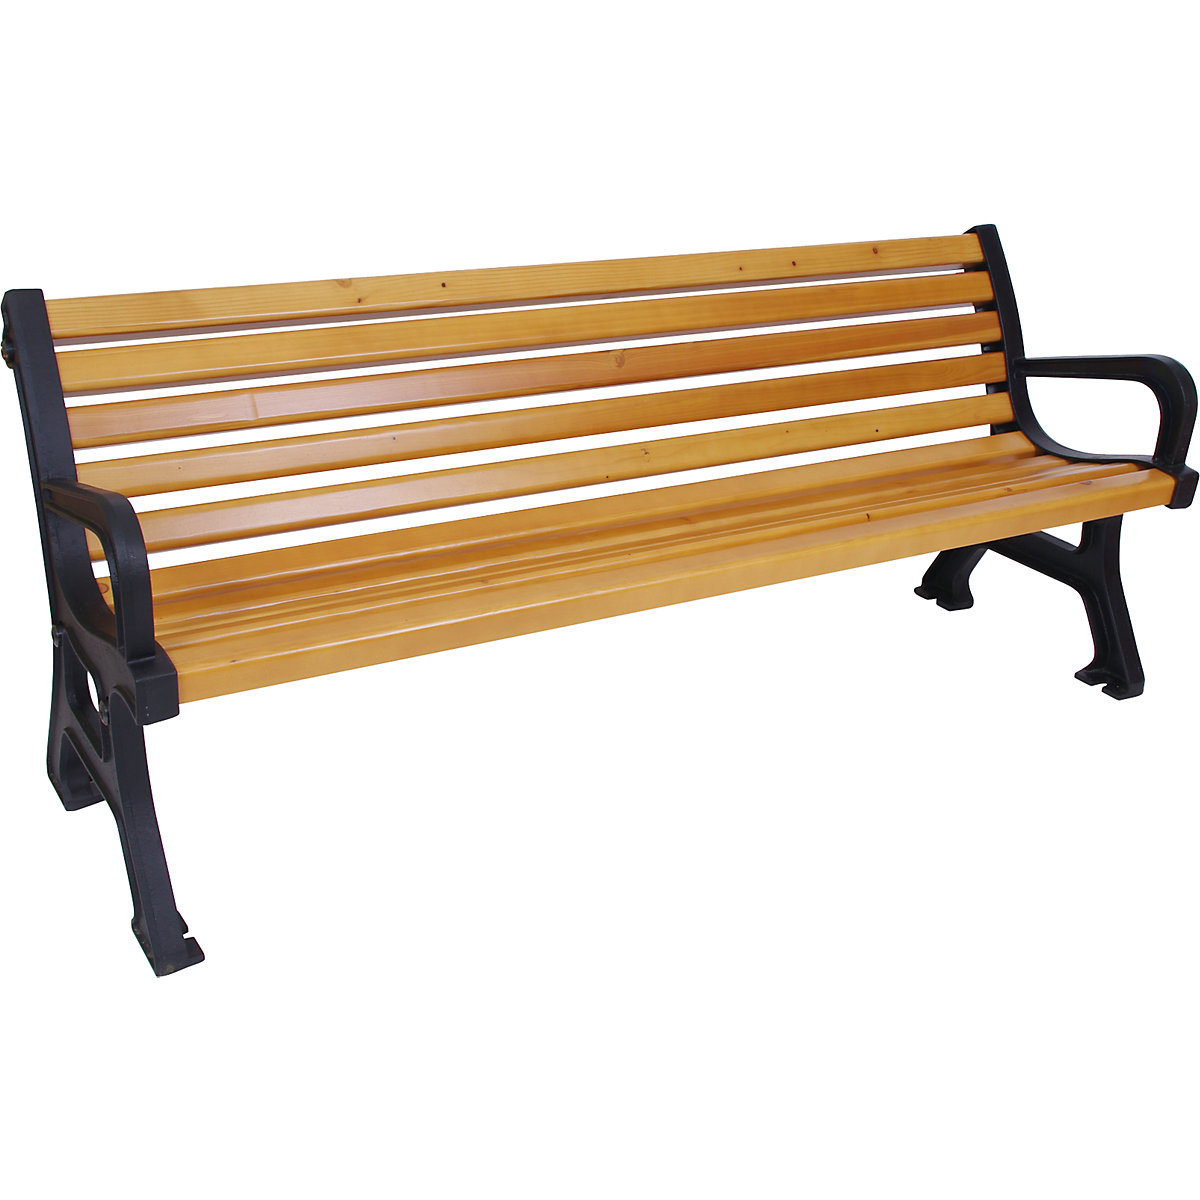 Outdoor bench: length 1700 mm, weight 56 kg | KAISER KRAFT